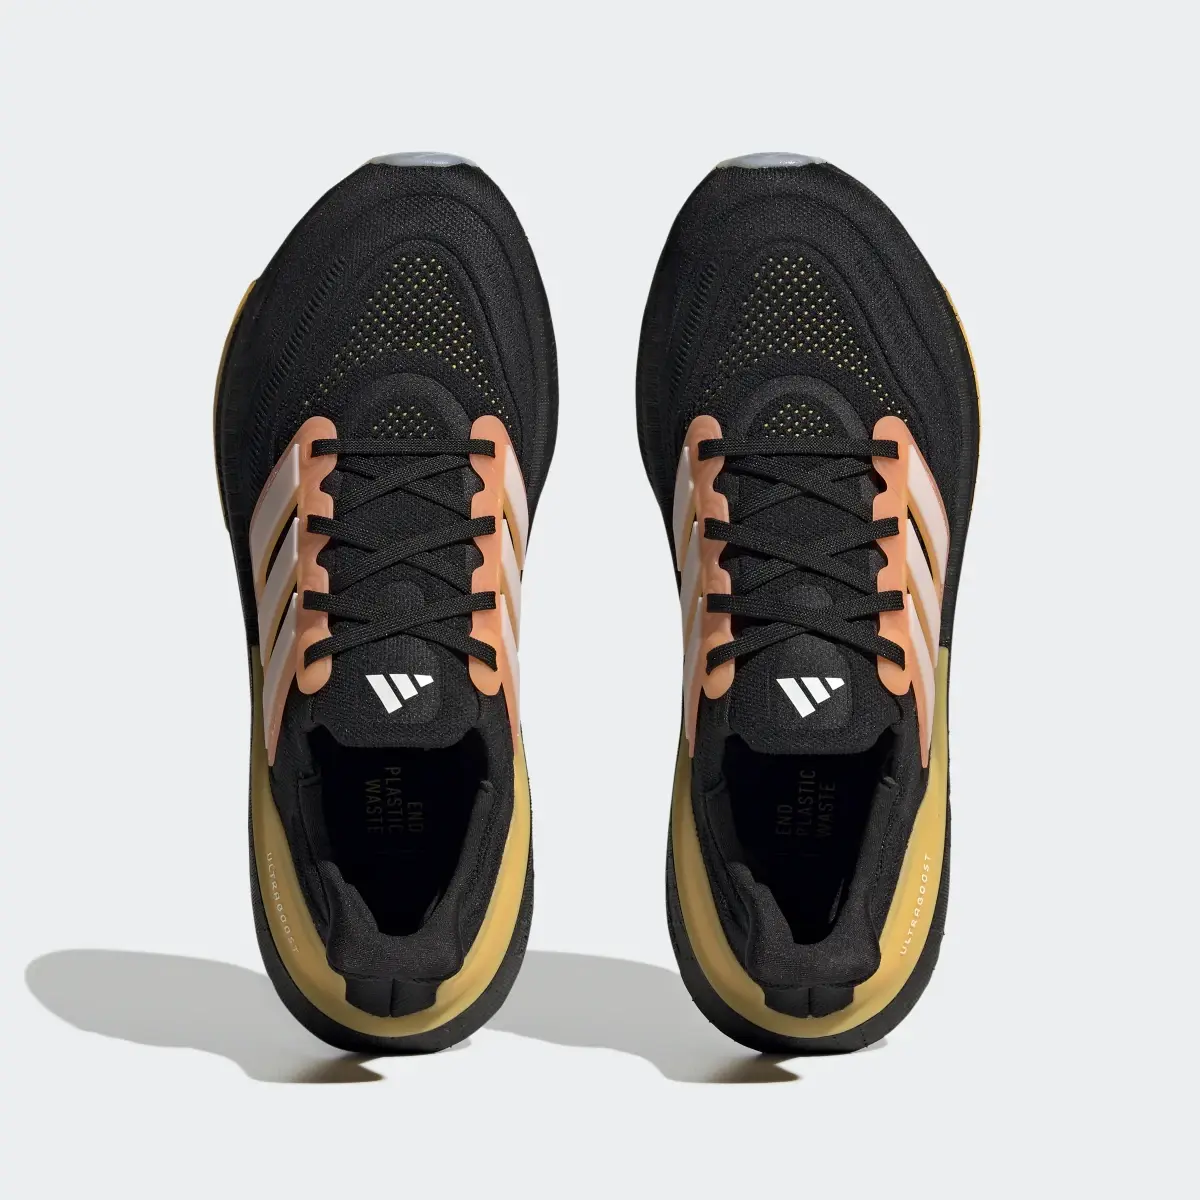 Adidas Ultraboost Light Running Shoes. 3